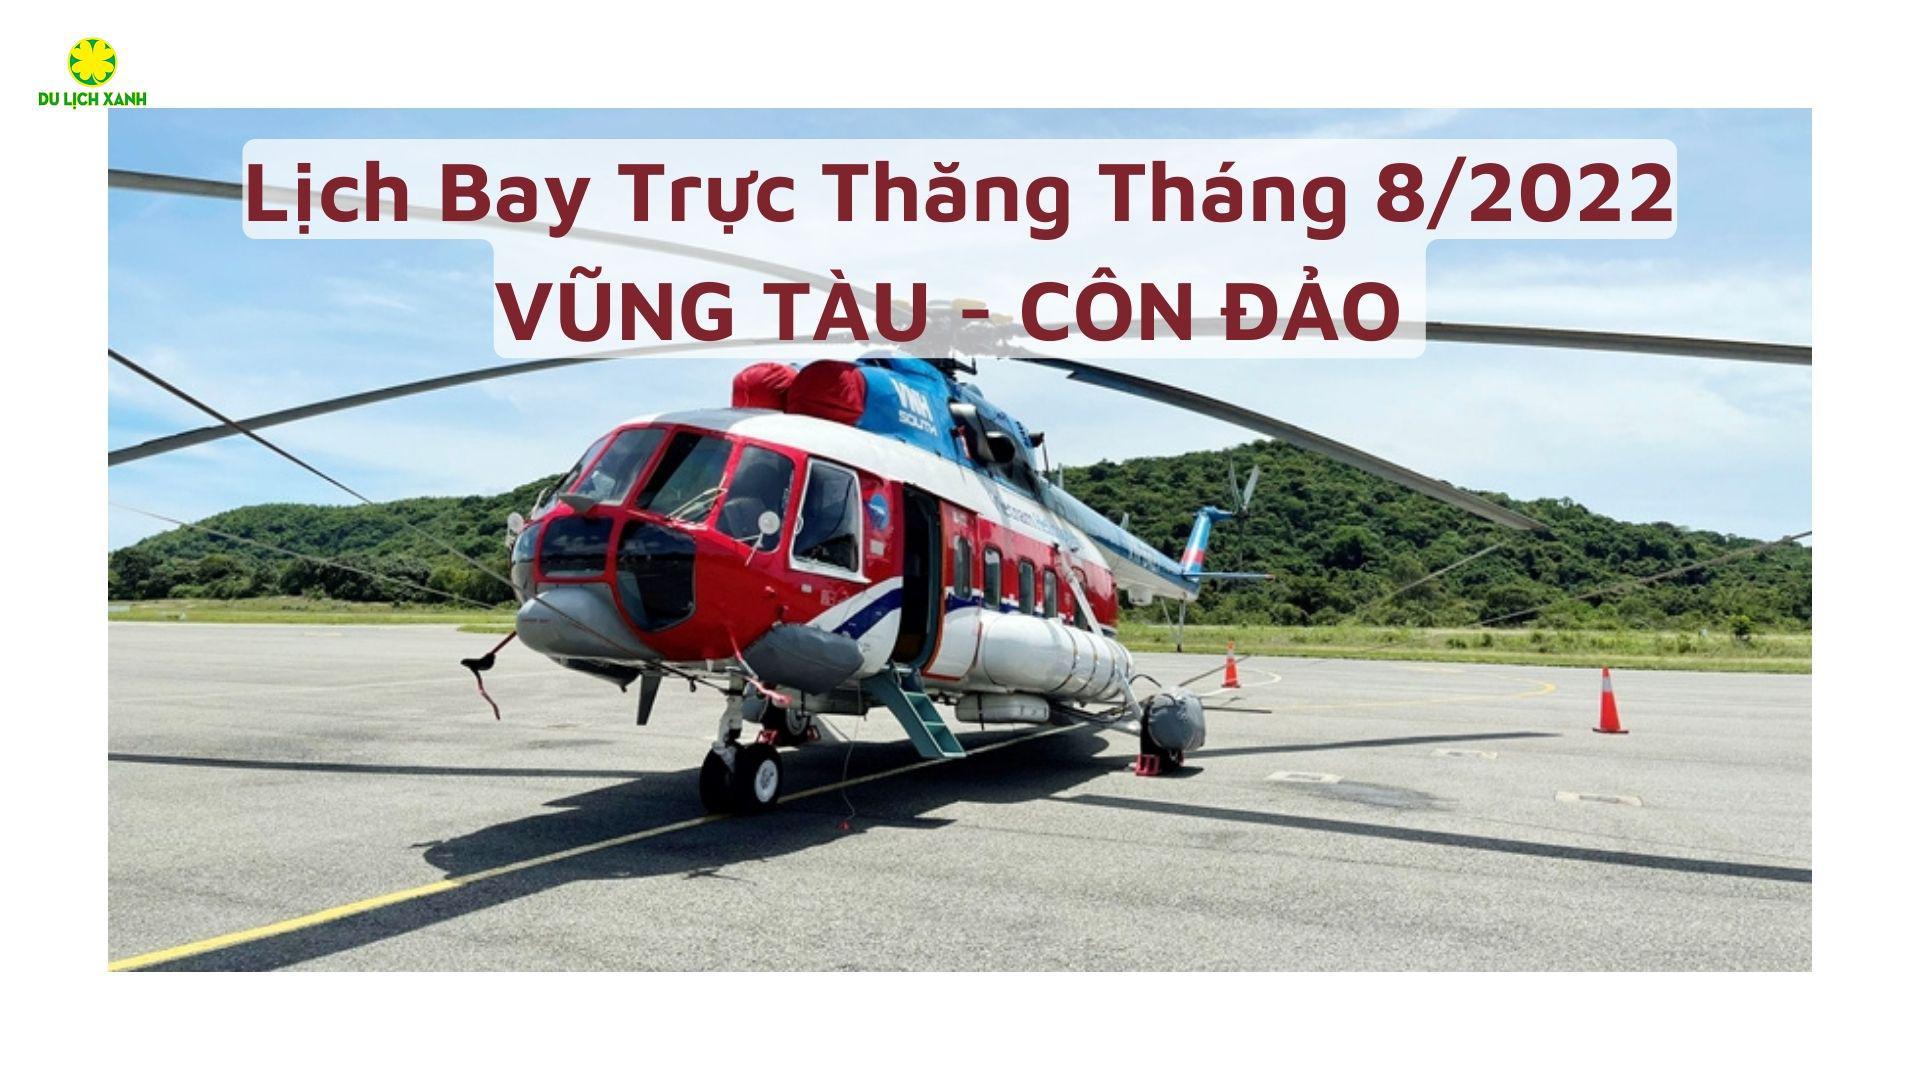 Lịch bay Trực thăng Vũng Tàu - Côn Đảo tháng 8/2022